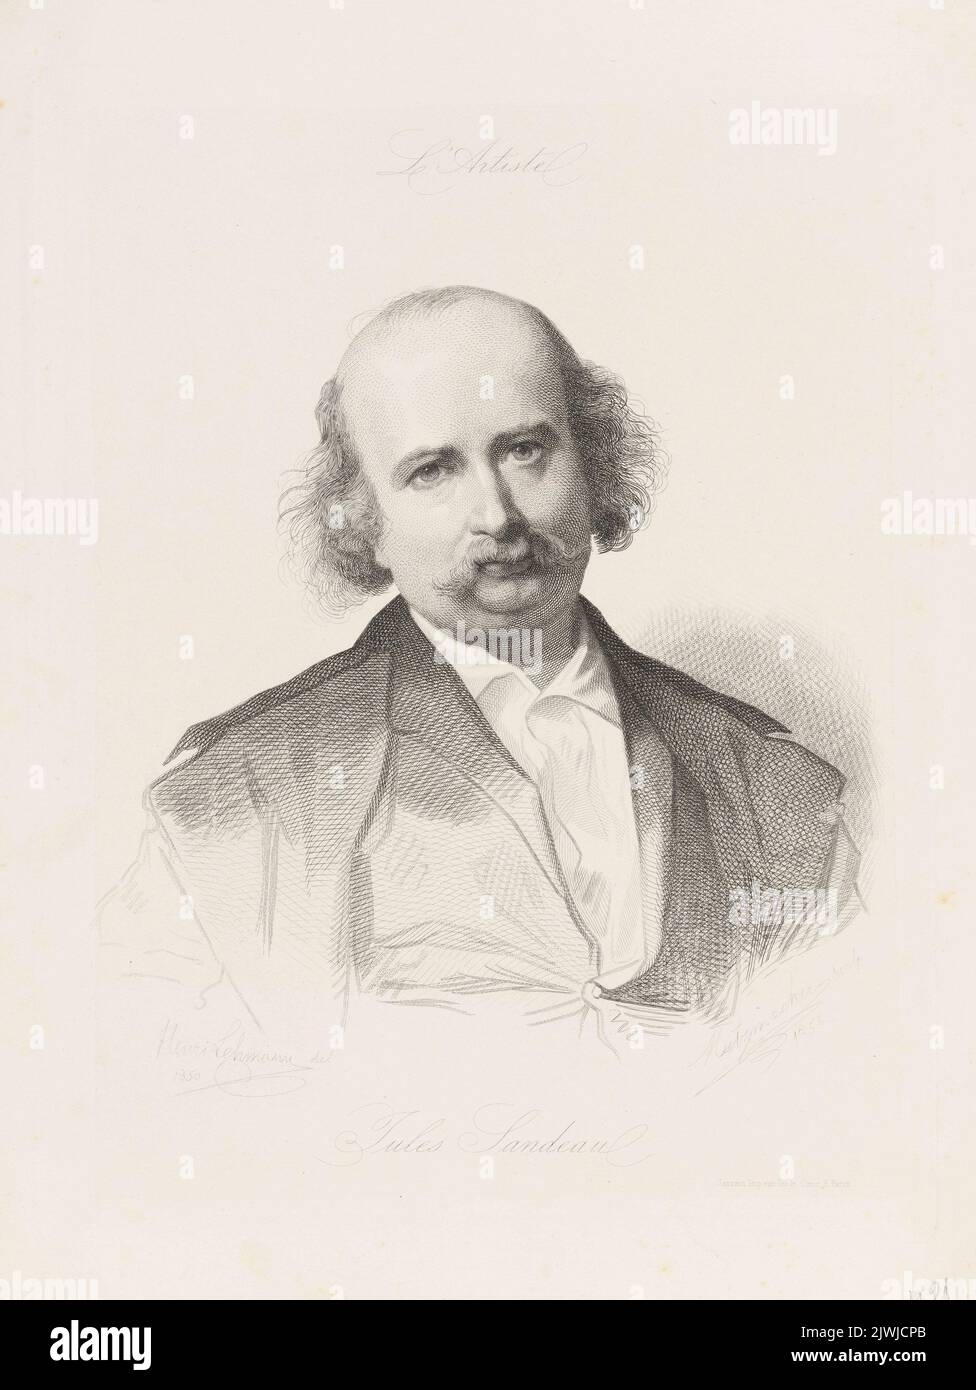 Portrait of Jules Sandeau. Metzmacher, Pierre Guillaume (1815-post 1870), graphic artist, Sarazin (Paryż ; drukarnia ; fl. ca 1846-1880), publisher, Lehmann H., painter Stock Photo